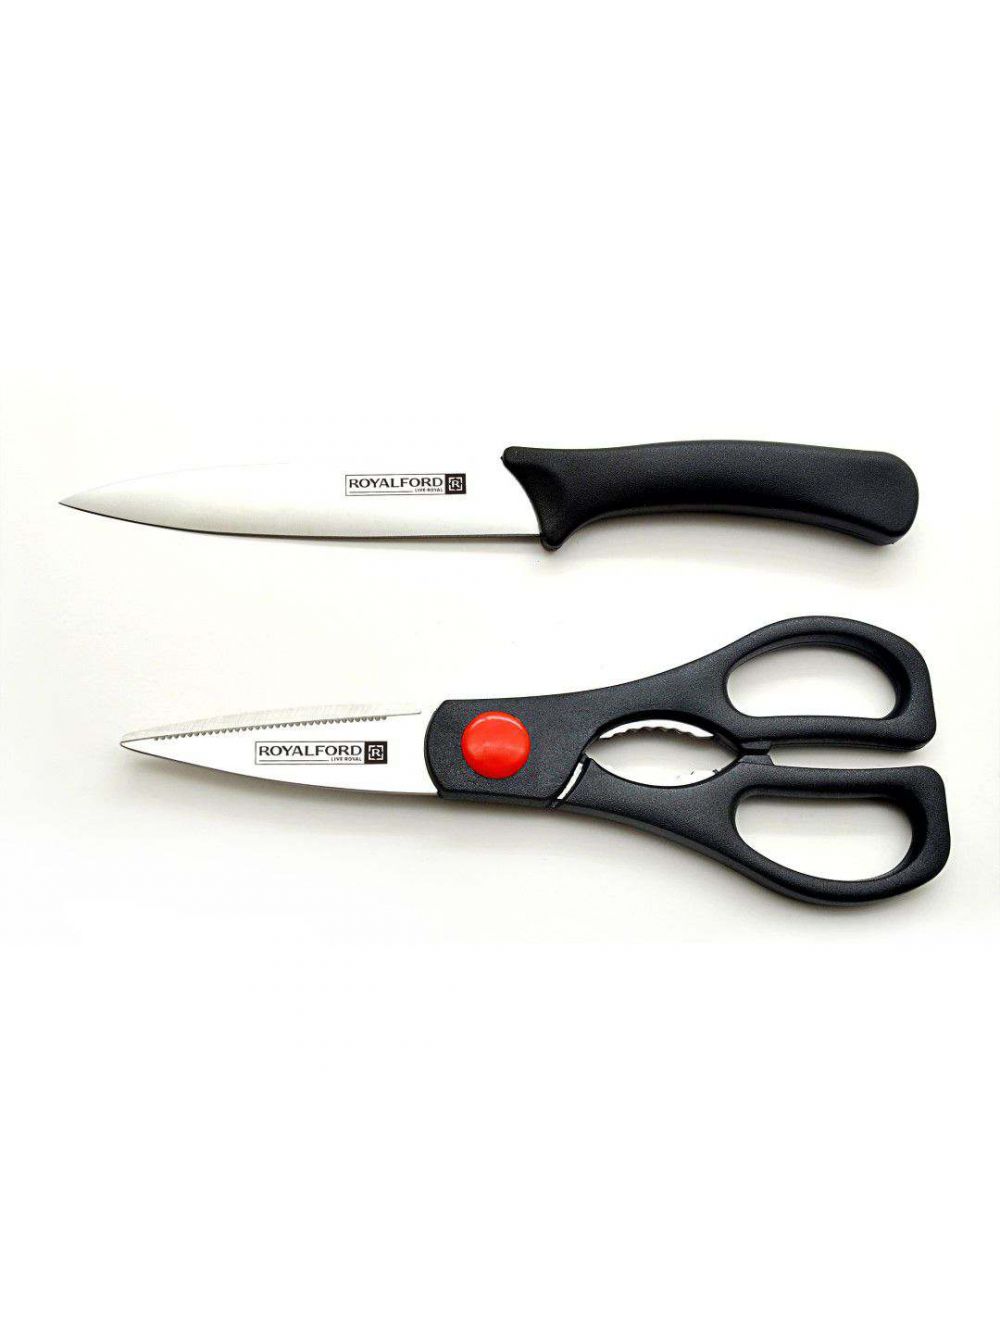 Royalford RF7857 2 Pcs Utlity Knife Set (Knife + Scissors)